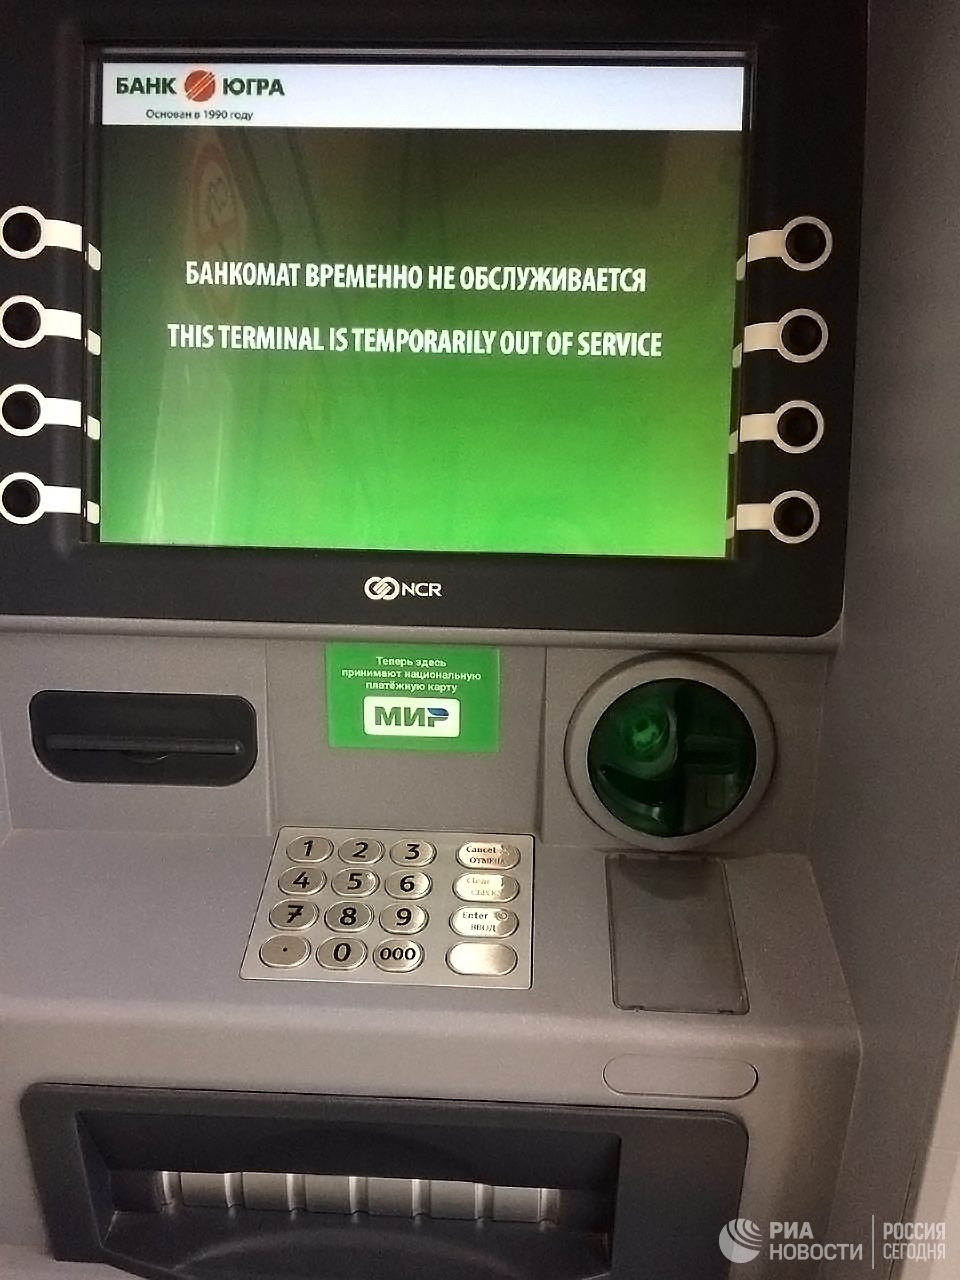 Банкомат зажевал карту что делать. Банкомат. Карта в банкомате. Экран банкомата. Карта банкоматов Сбербанка.